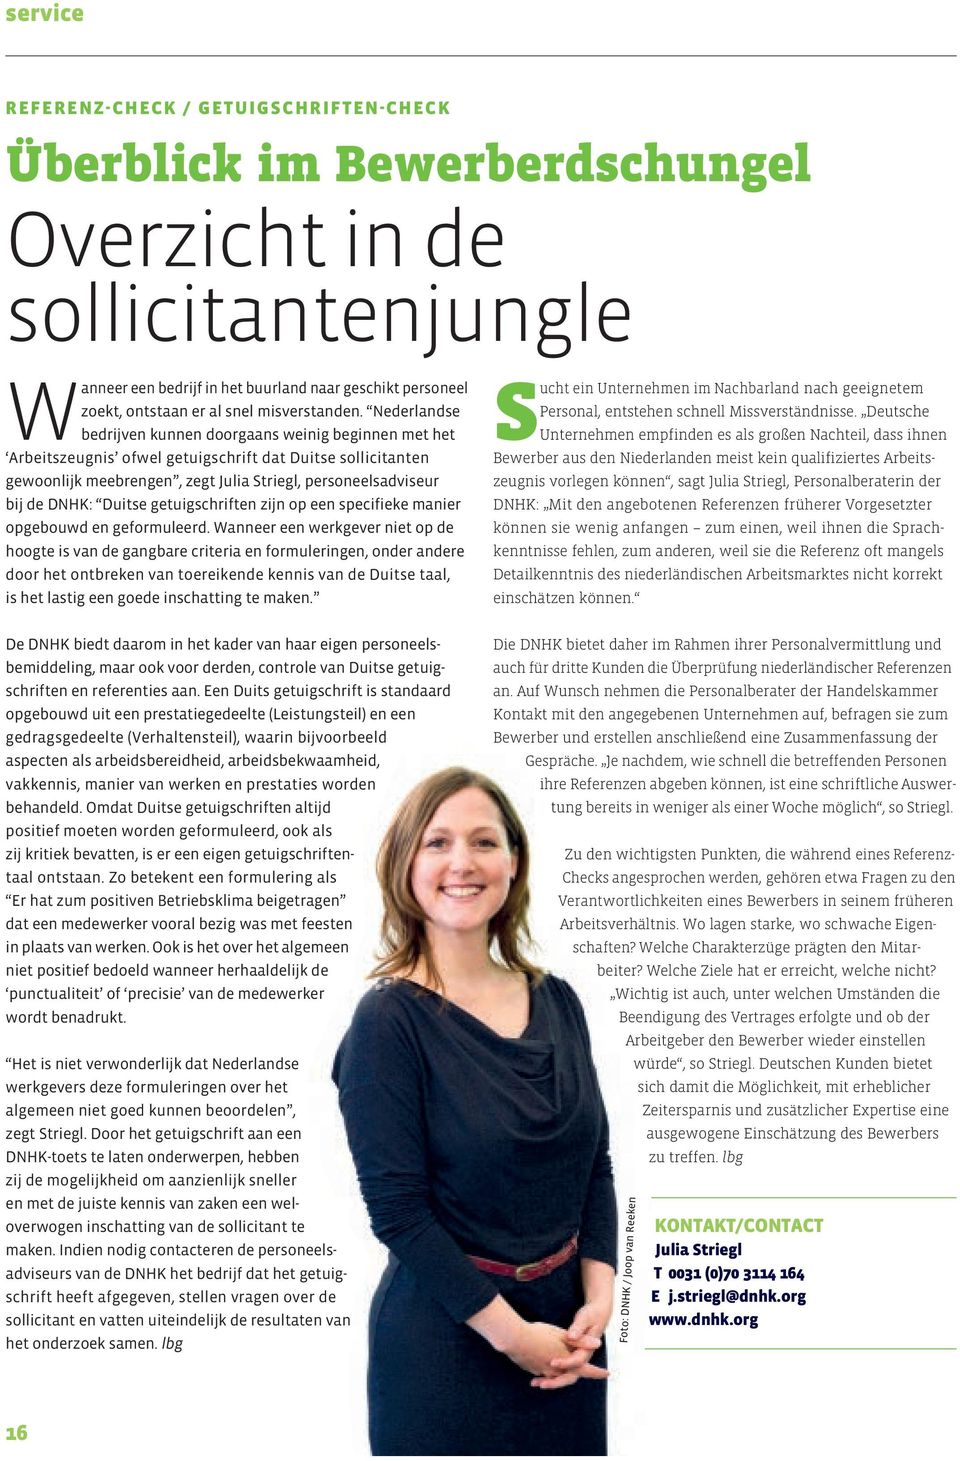 Nederlandse bedrijven kunnen doorgaans weinig beginnen met het Arbeits zeugnis ofwel getuigschrift dat Duitse sollicitanten gewoonlijk meebrengen, zegt Julia Striegl, personeelsadviseur bij de DNHK: